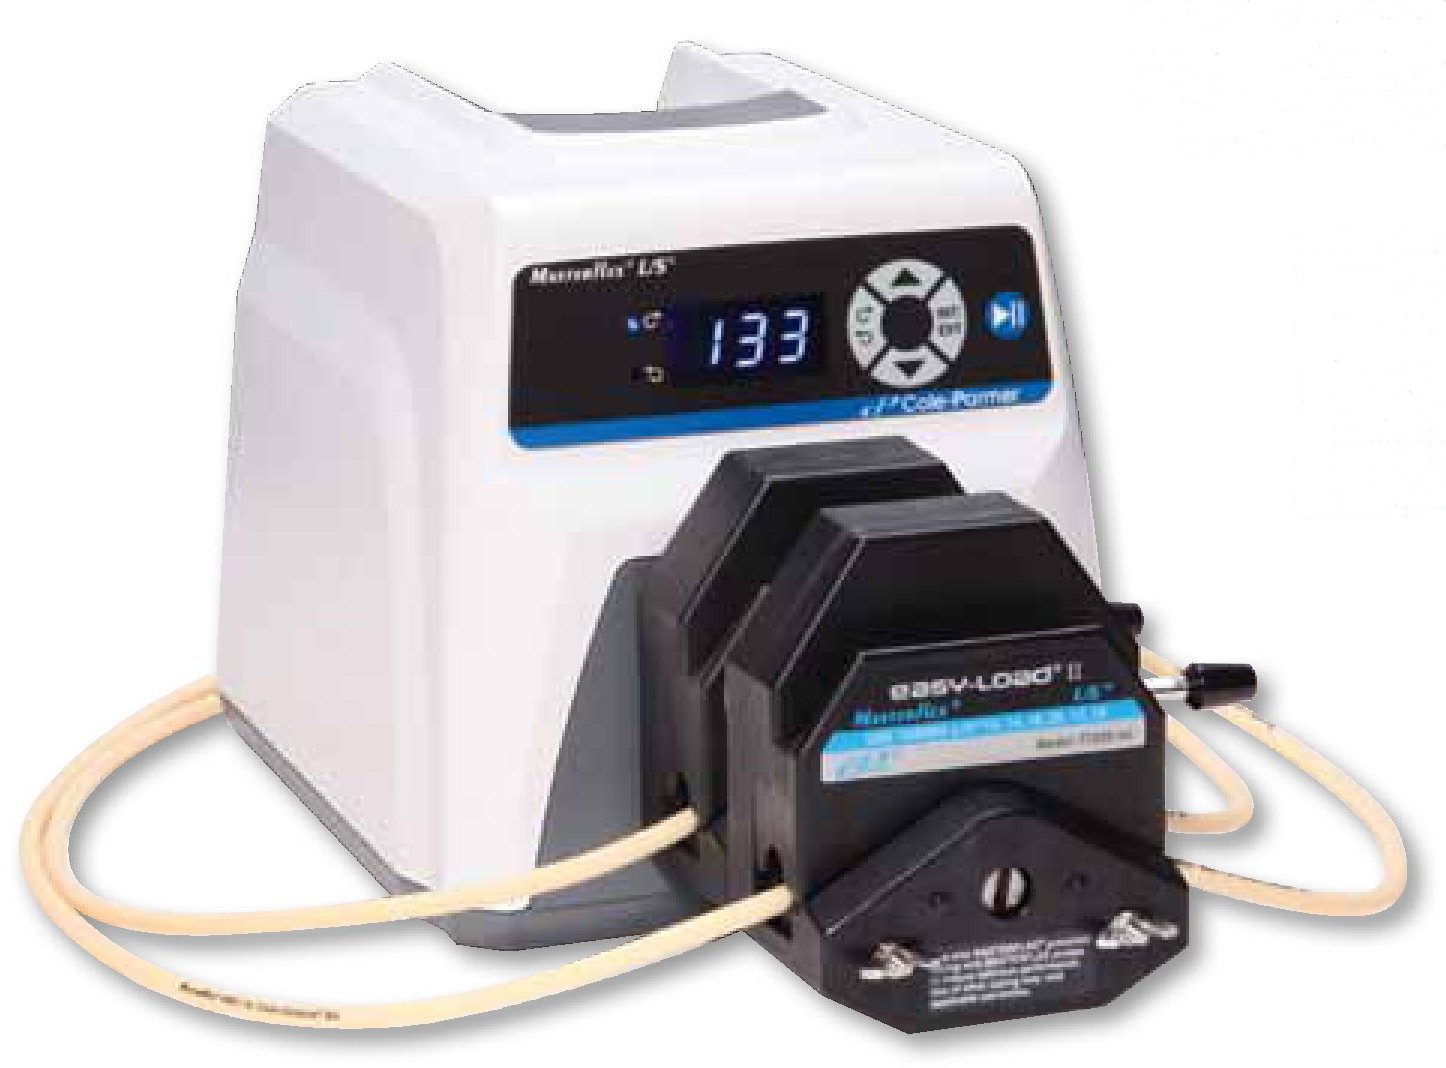 Masterflex pump, peristaltic pump, ปั๊มรีดท่อสายยาง